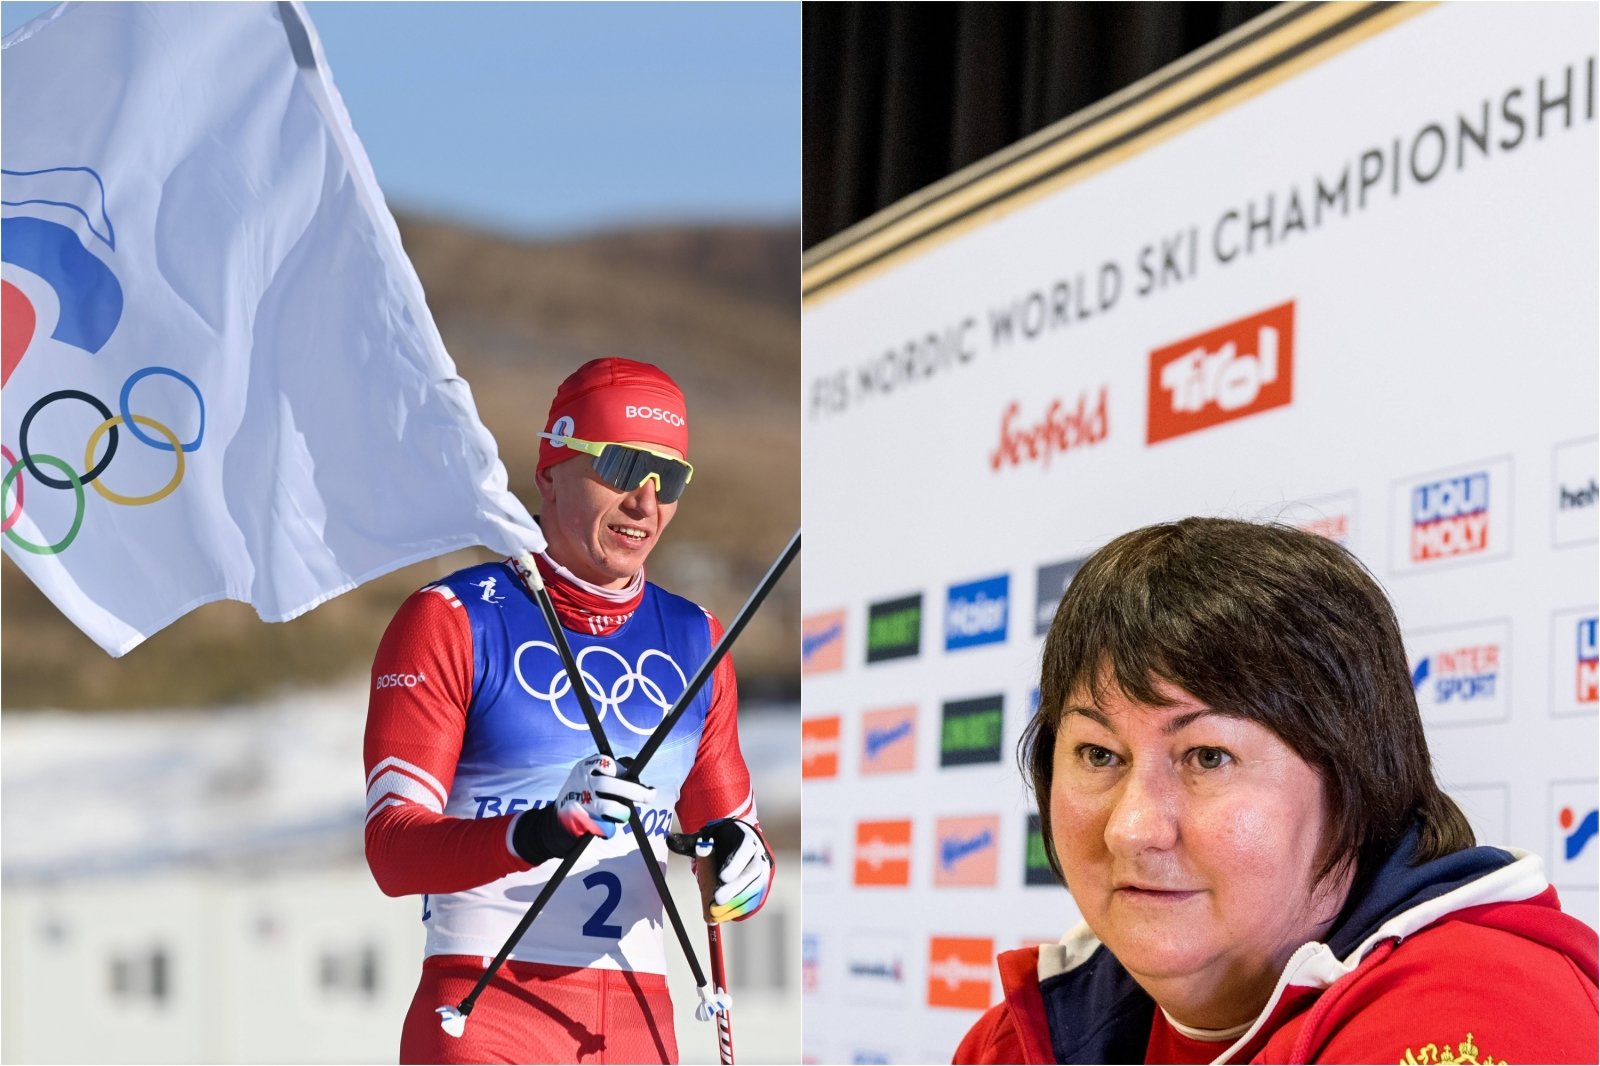 Påminnelsen om dopingskandalen gjorde russerne sinte: De varslet boikott av norske journalister